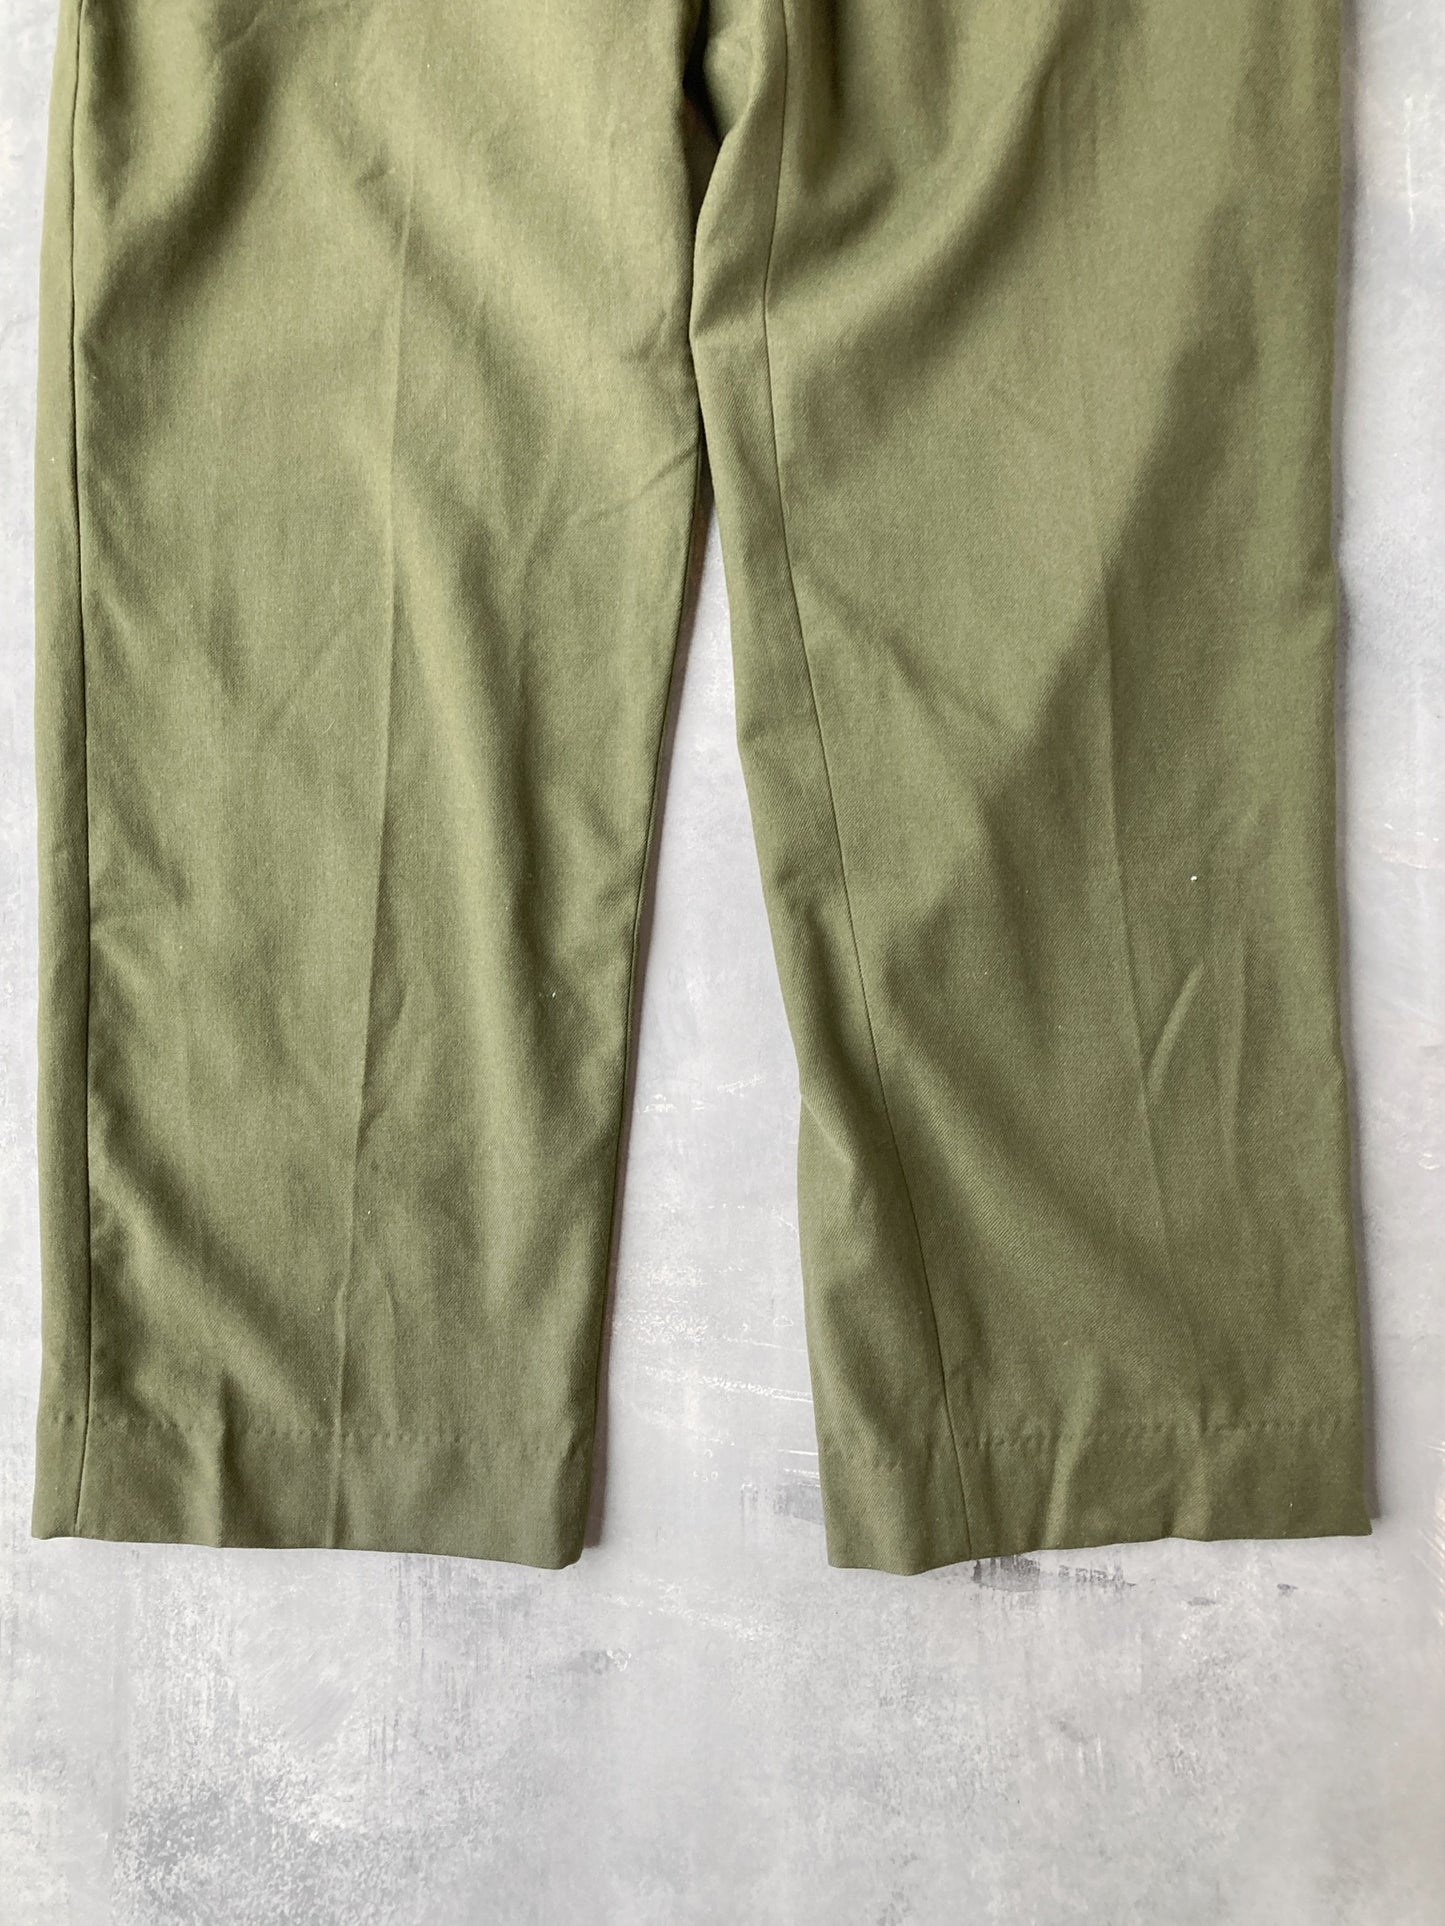 Wool M-51 Field Trousers 31-35x32